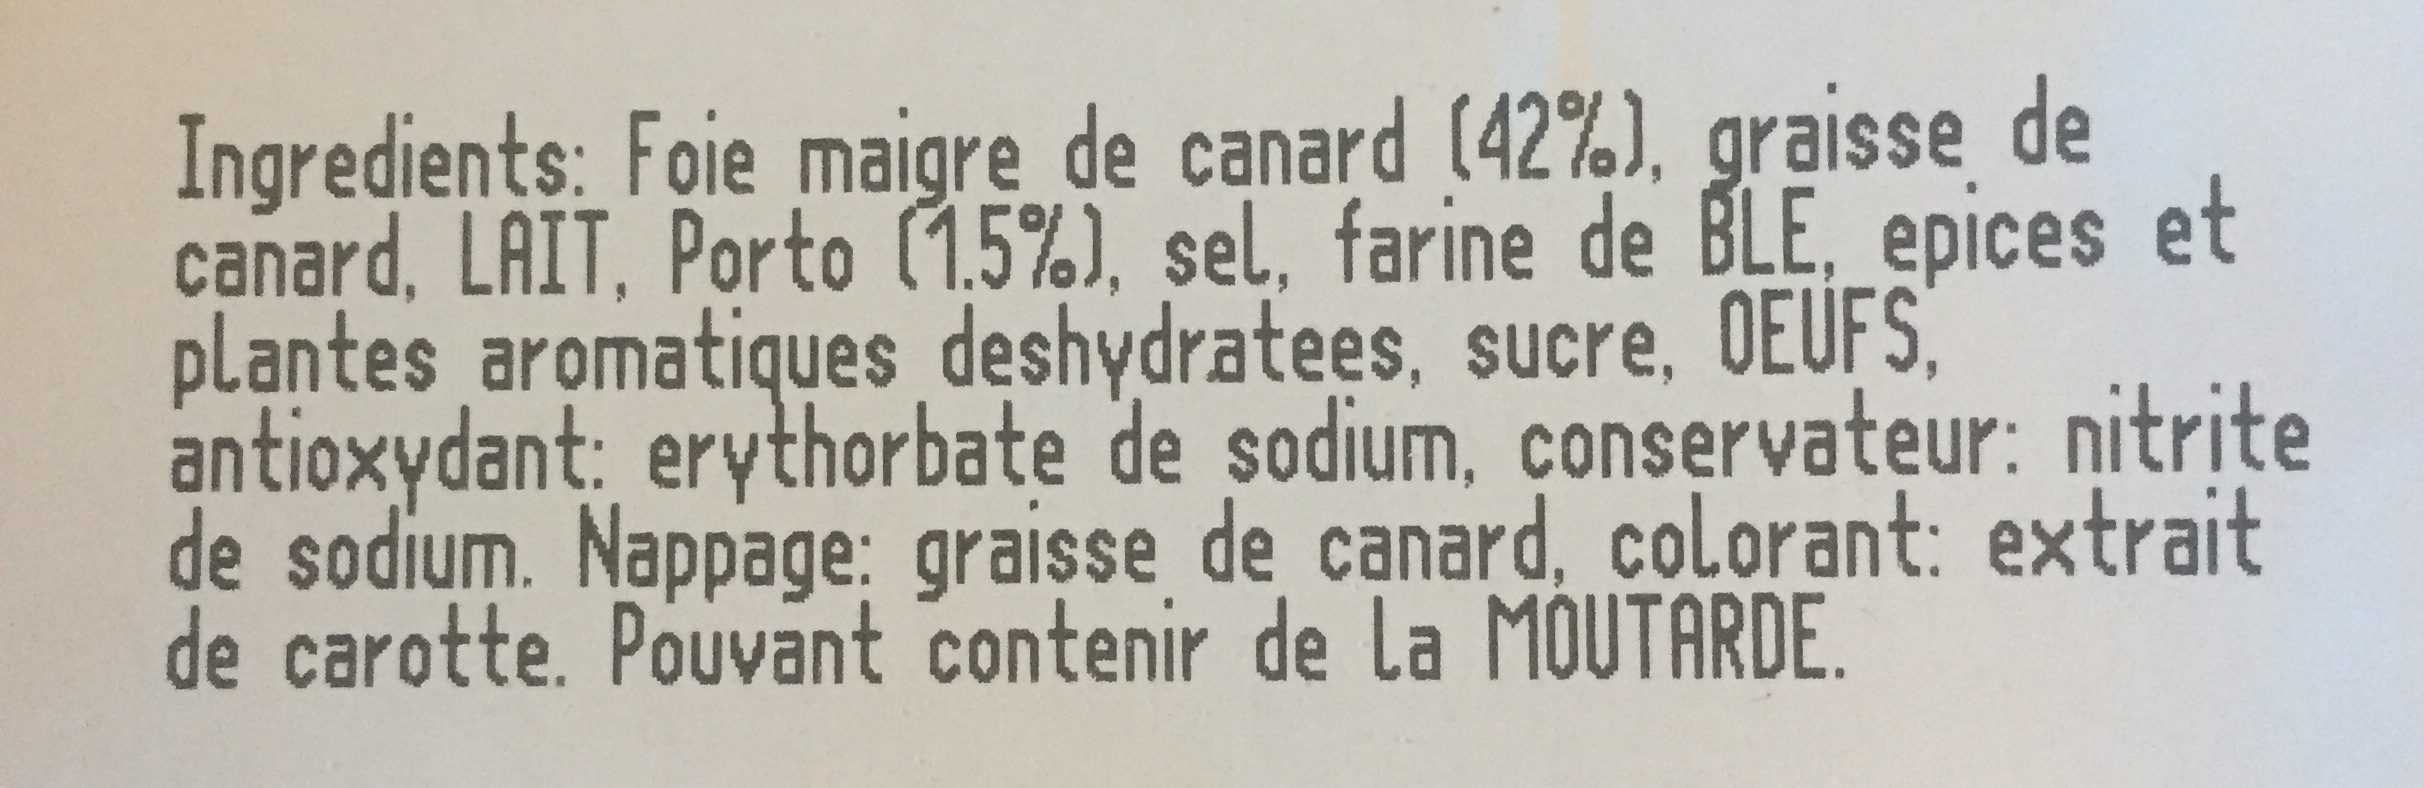 Mousse pur canard qualité supérieure - Ingredienti - fr